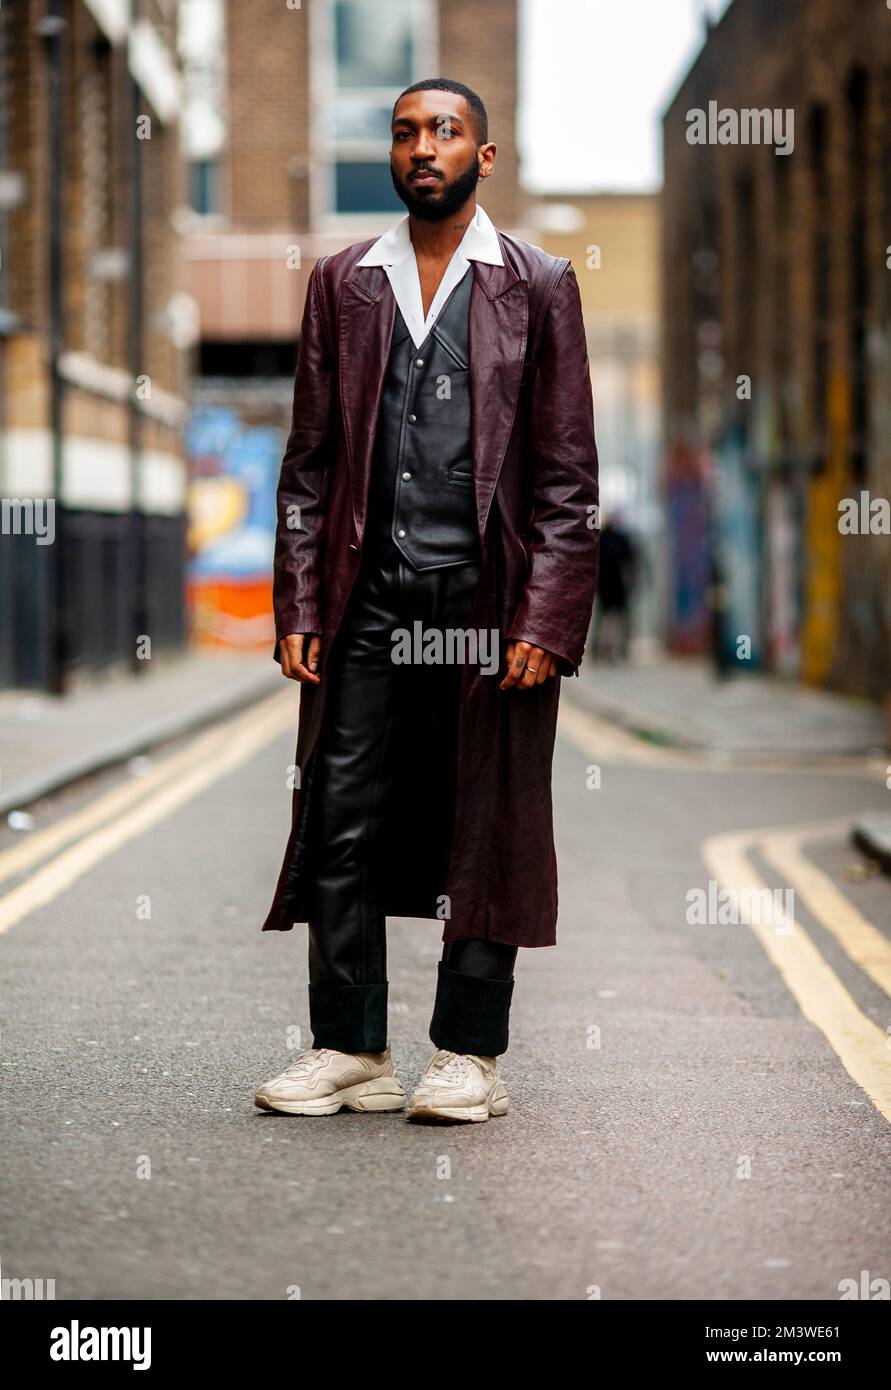 Jeune homme élégant à la Fashion week de Londres portant des vêtements de style urbain frais sur une rue de Londres Banque D'Images